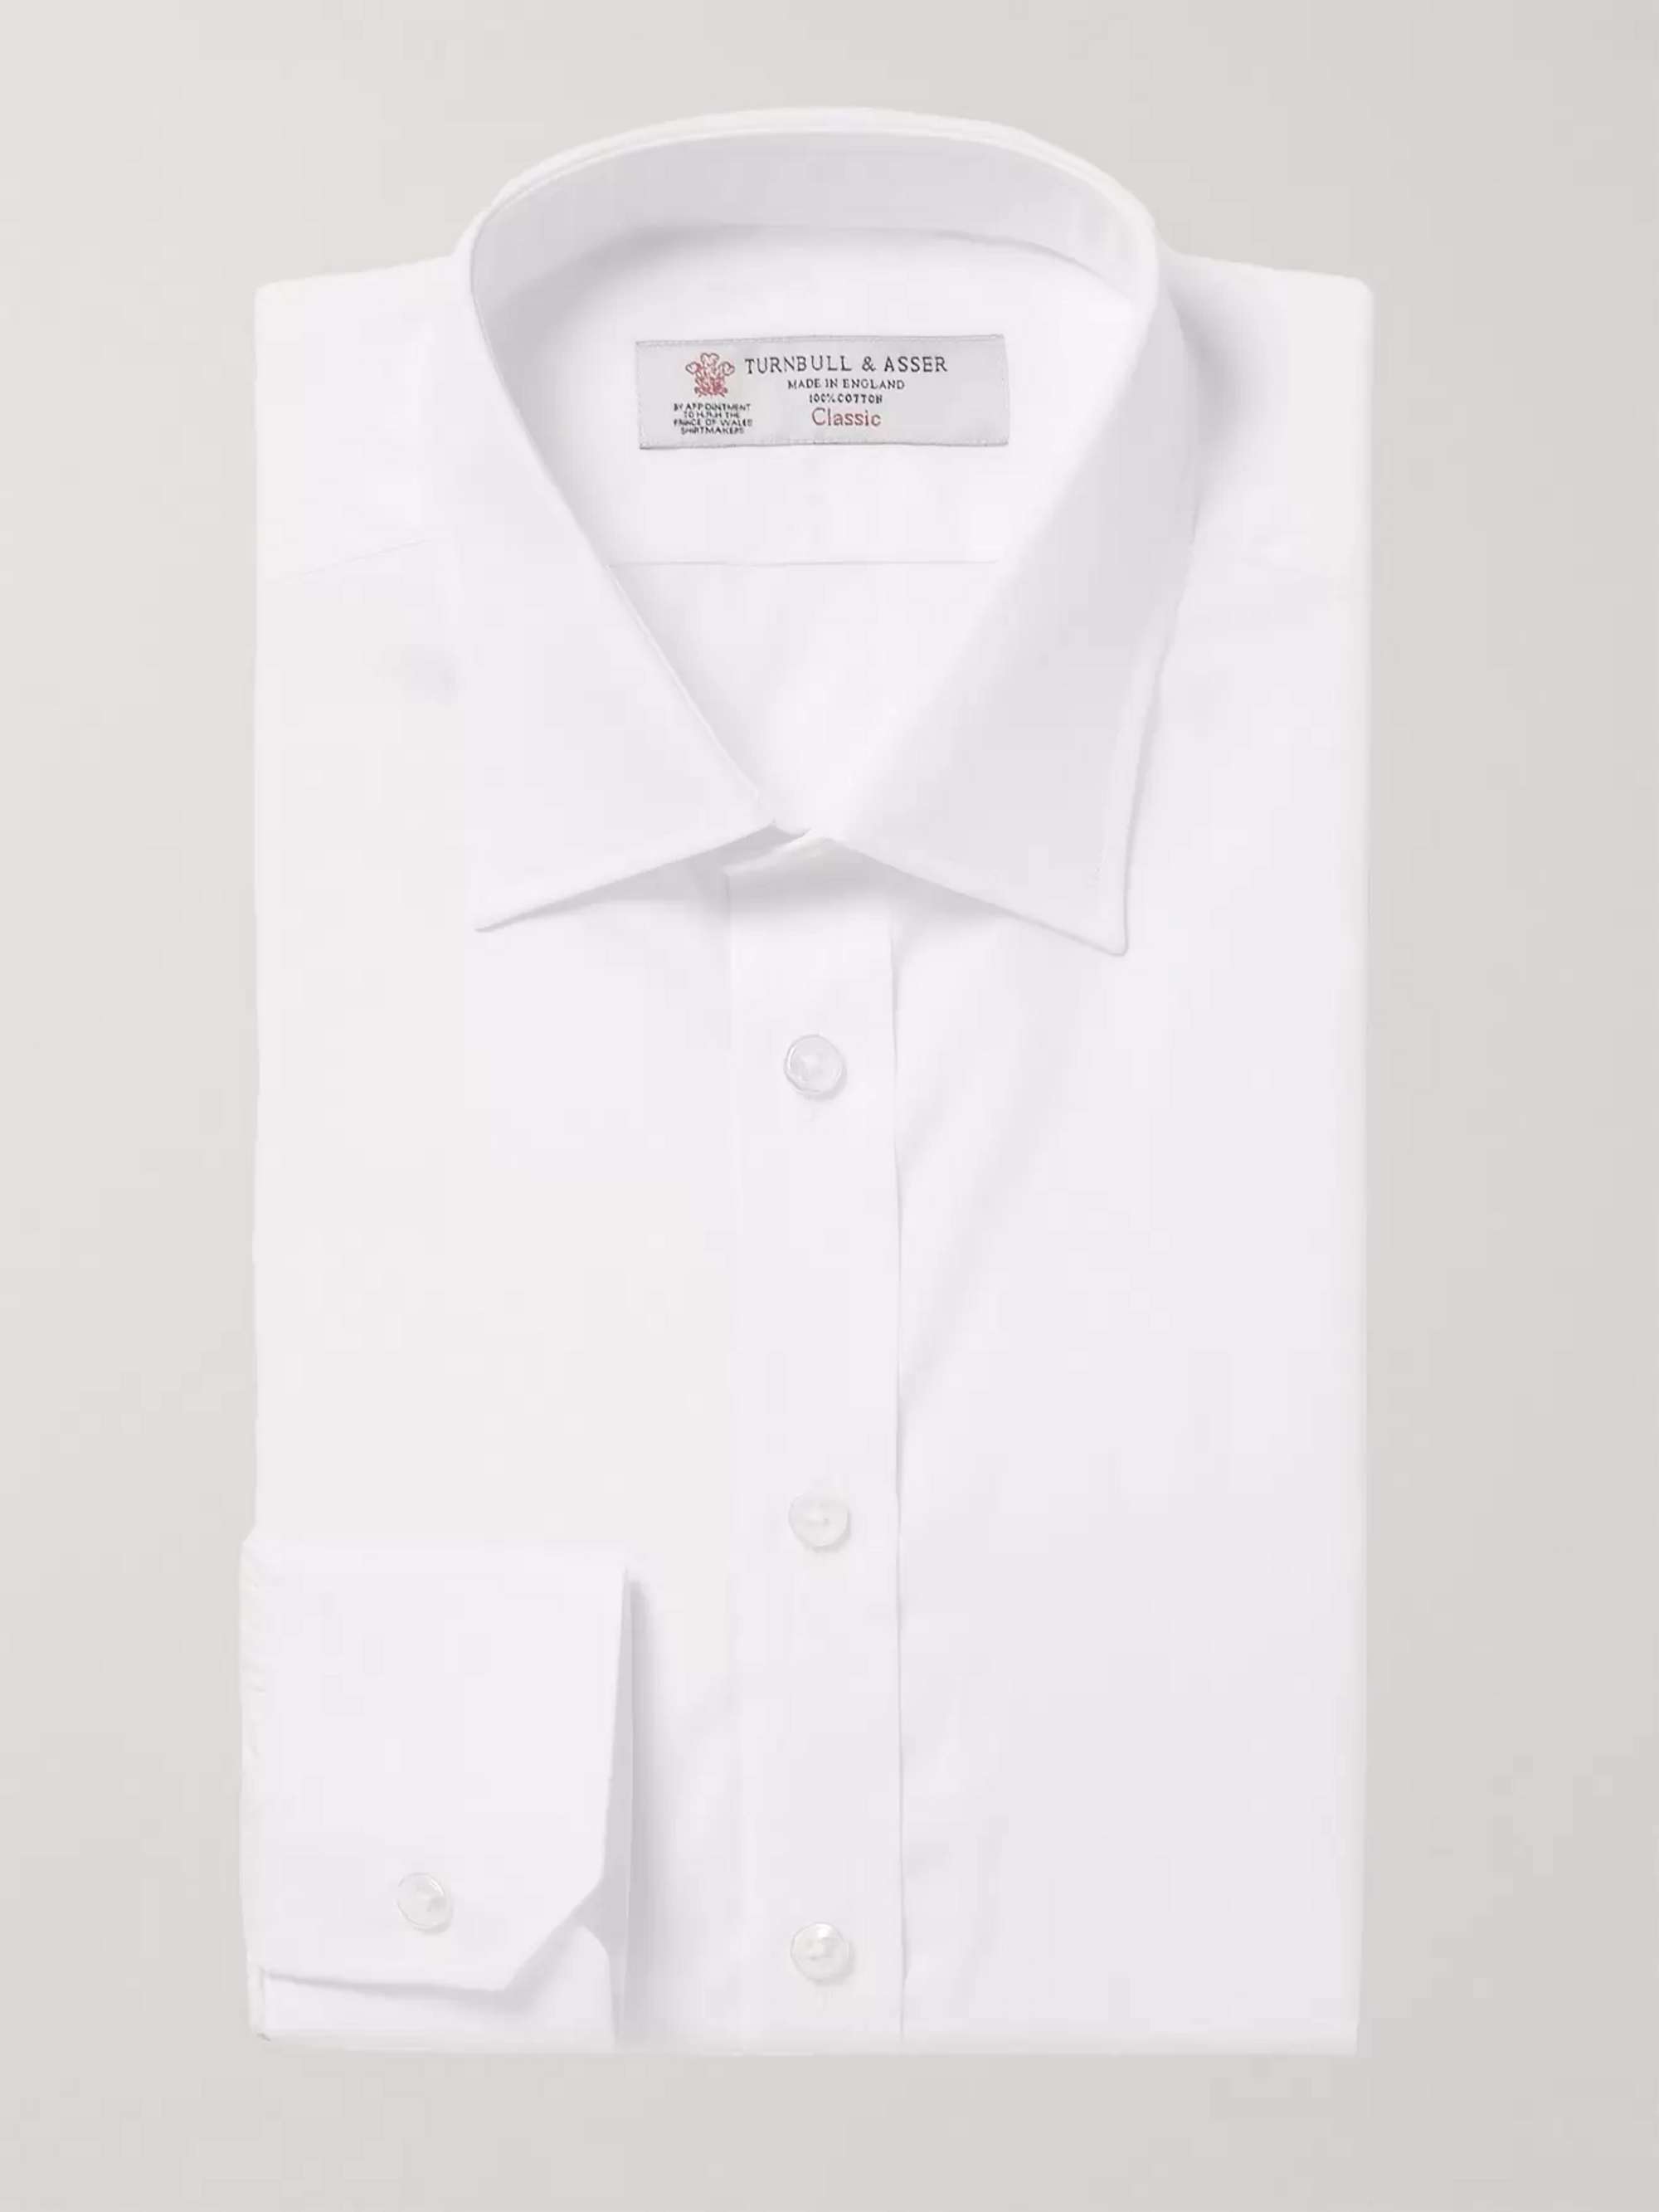 TURNBULL & ASSER White Cotton Shirt | MR PORTER